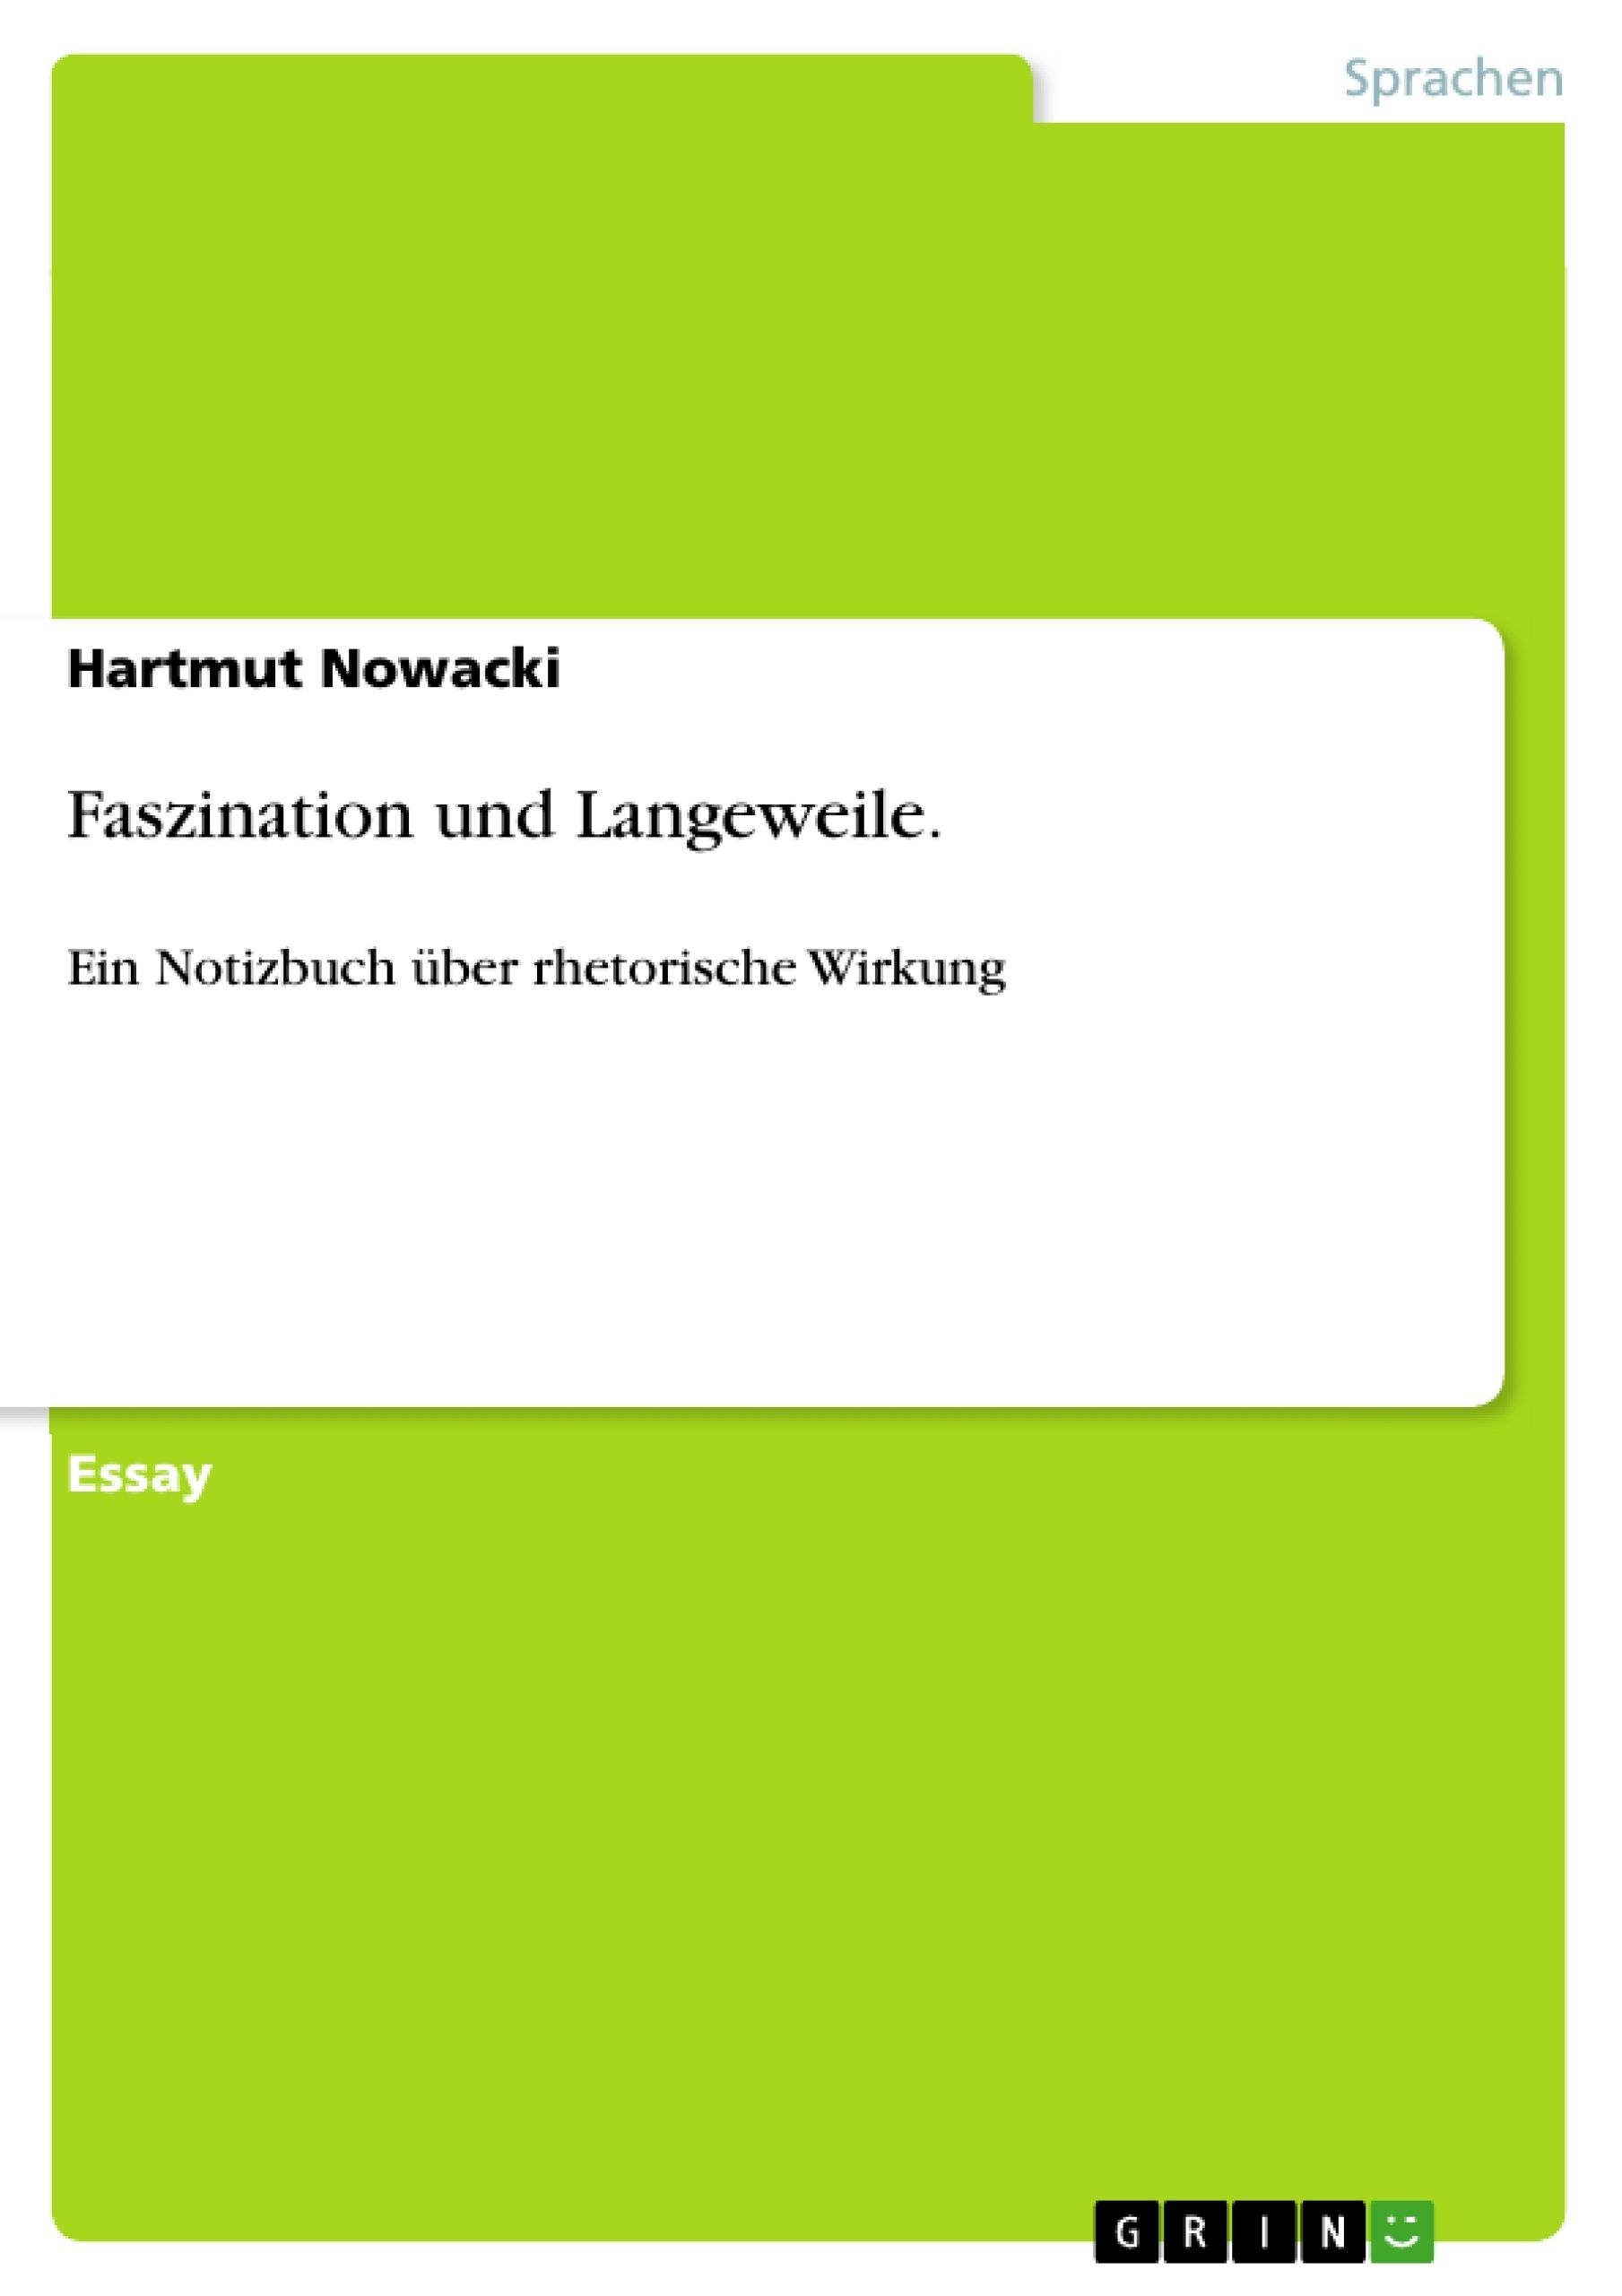 Title: Faszination und Langeweile.